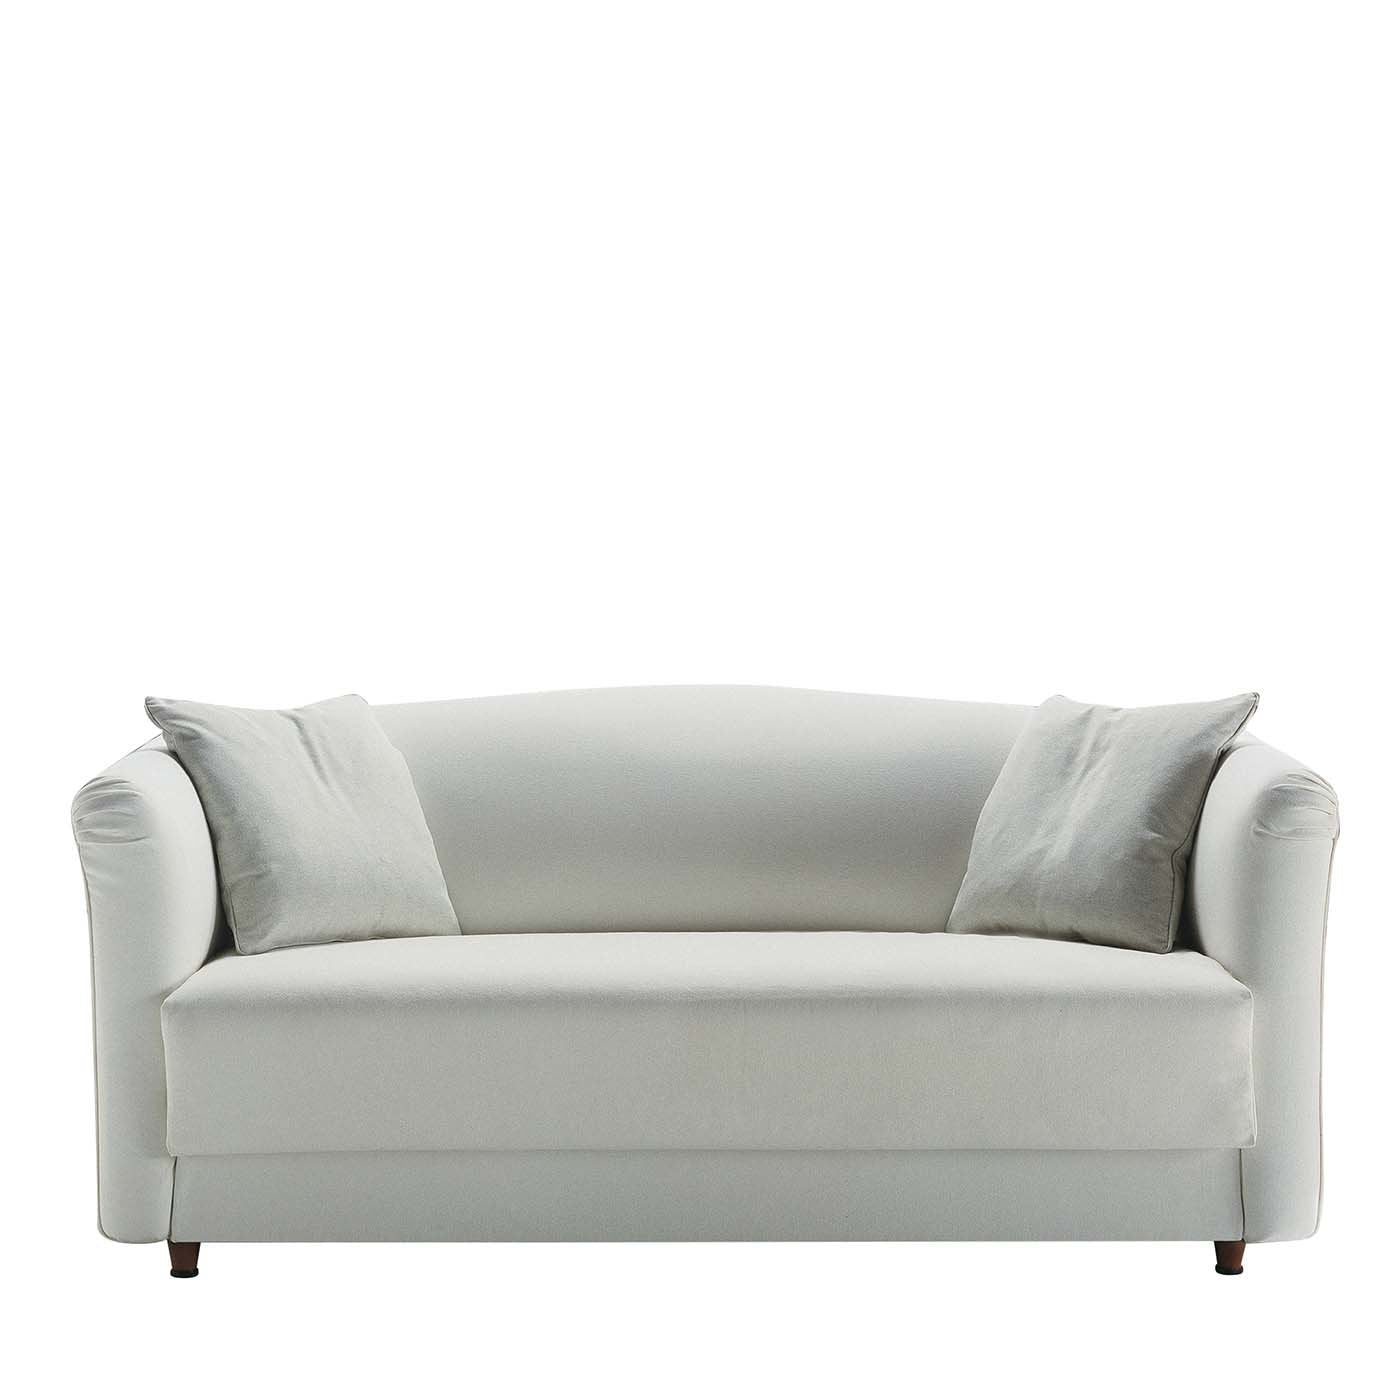 Valentino White Sofa Bed  - Main view